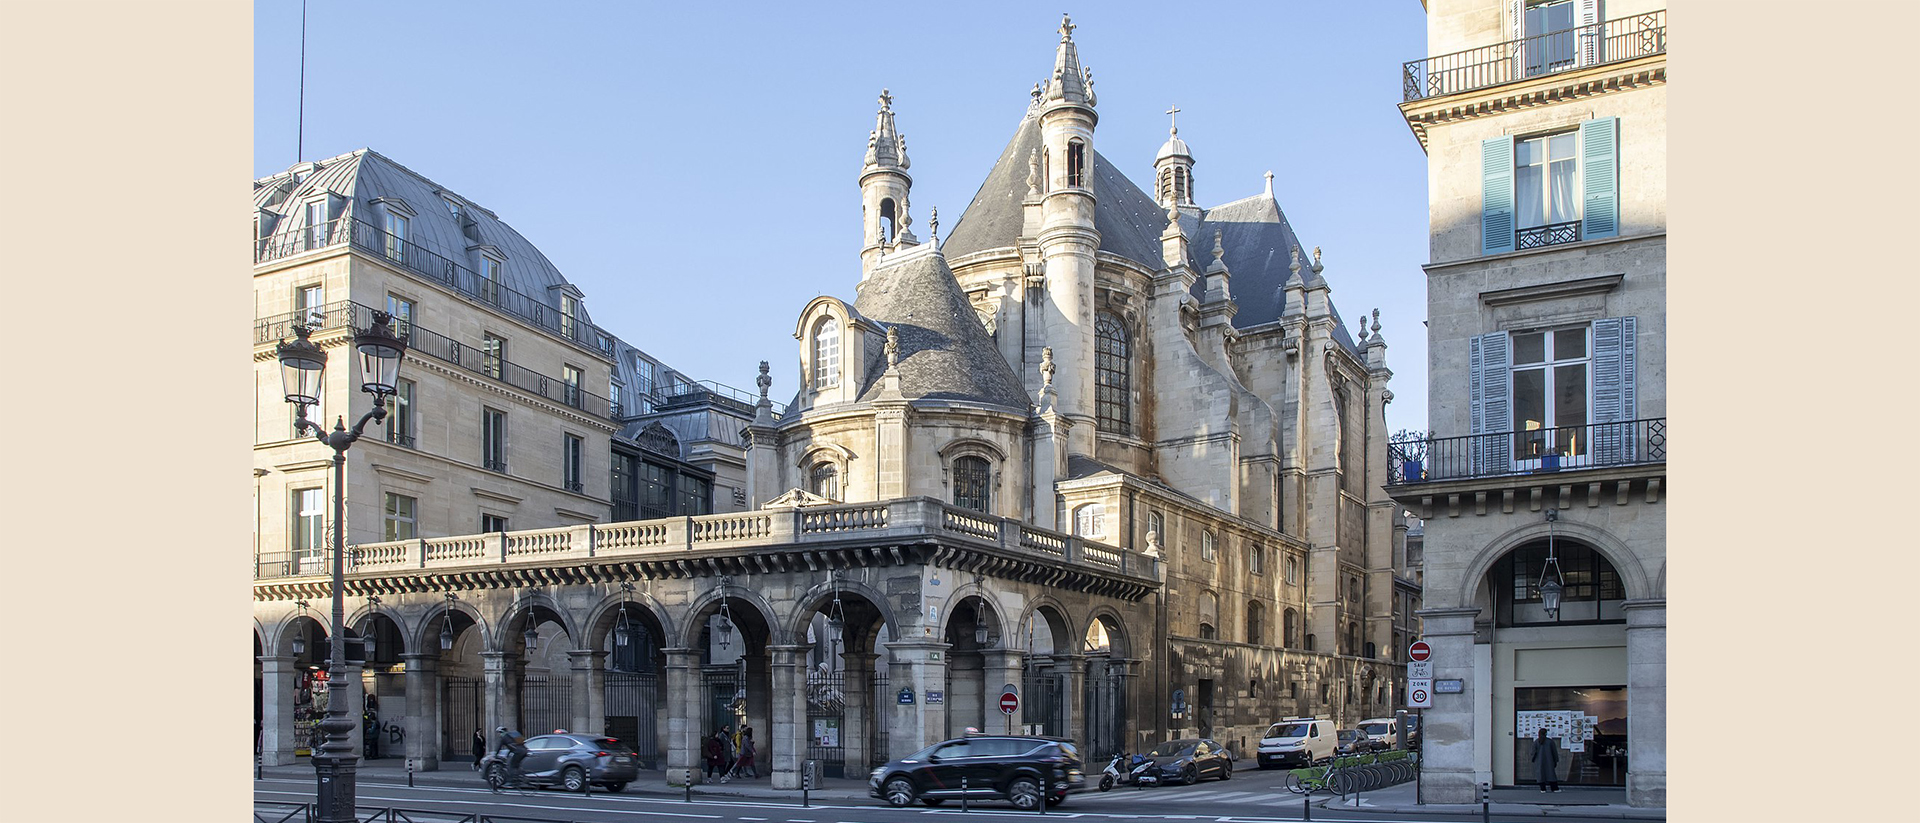 Le temple de l'Oratoire du Louvre à Paris, où Wilfred Monod fut pasteur et où fut fondée la Fraternité Spirituelle des Veilleurs | Wikimedia commons – Arthur Weidmann – CC BY-SA 4.0